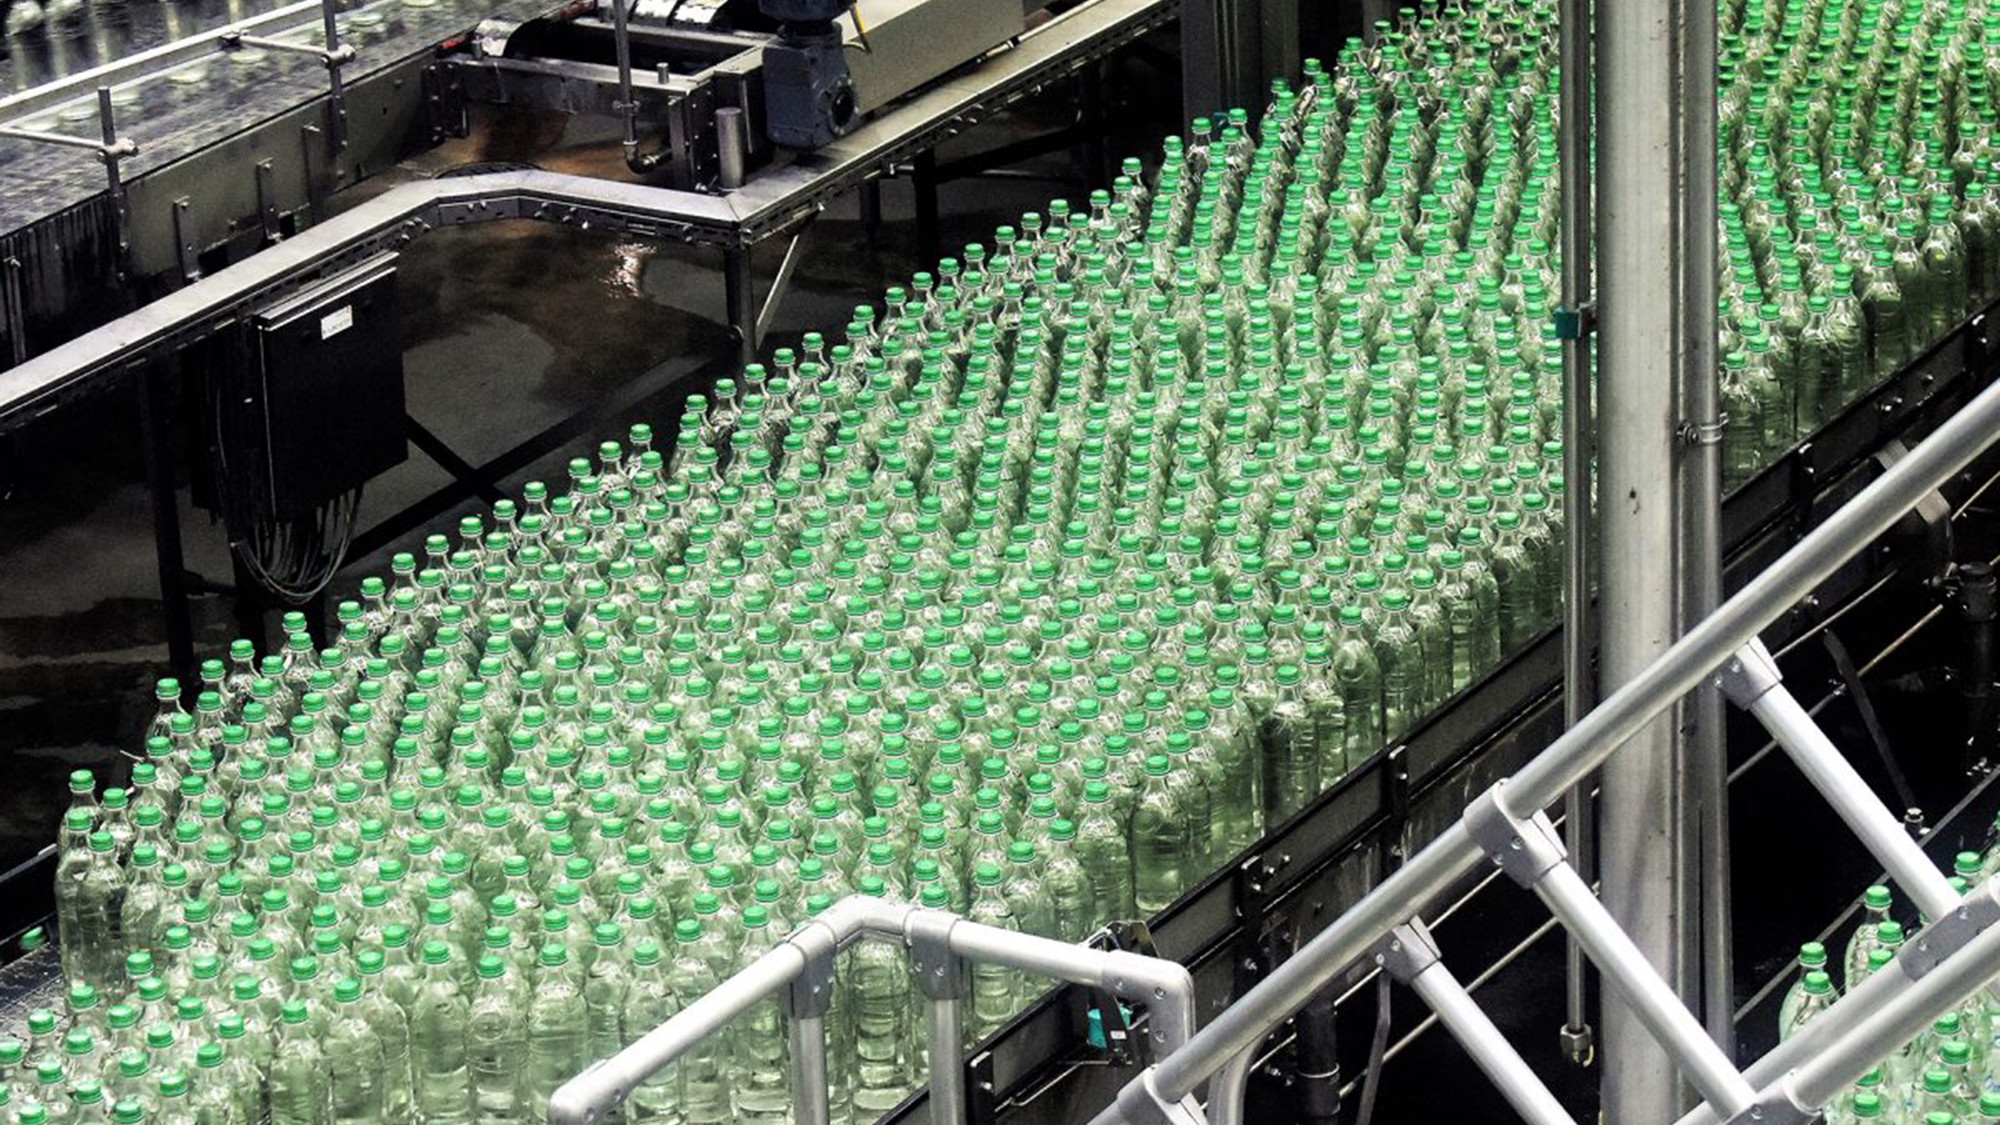 EPR green bottles